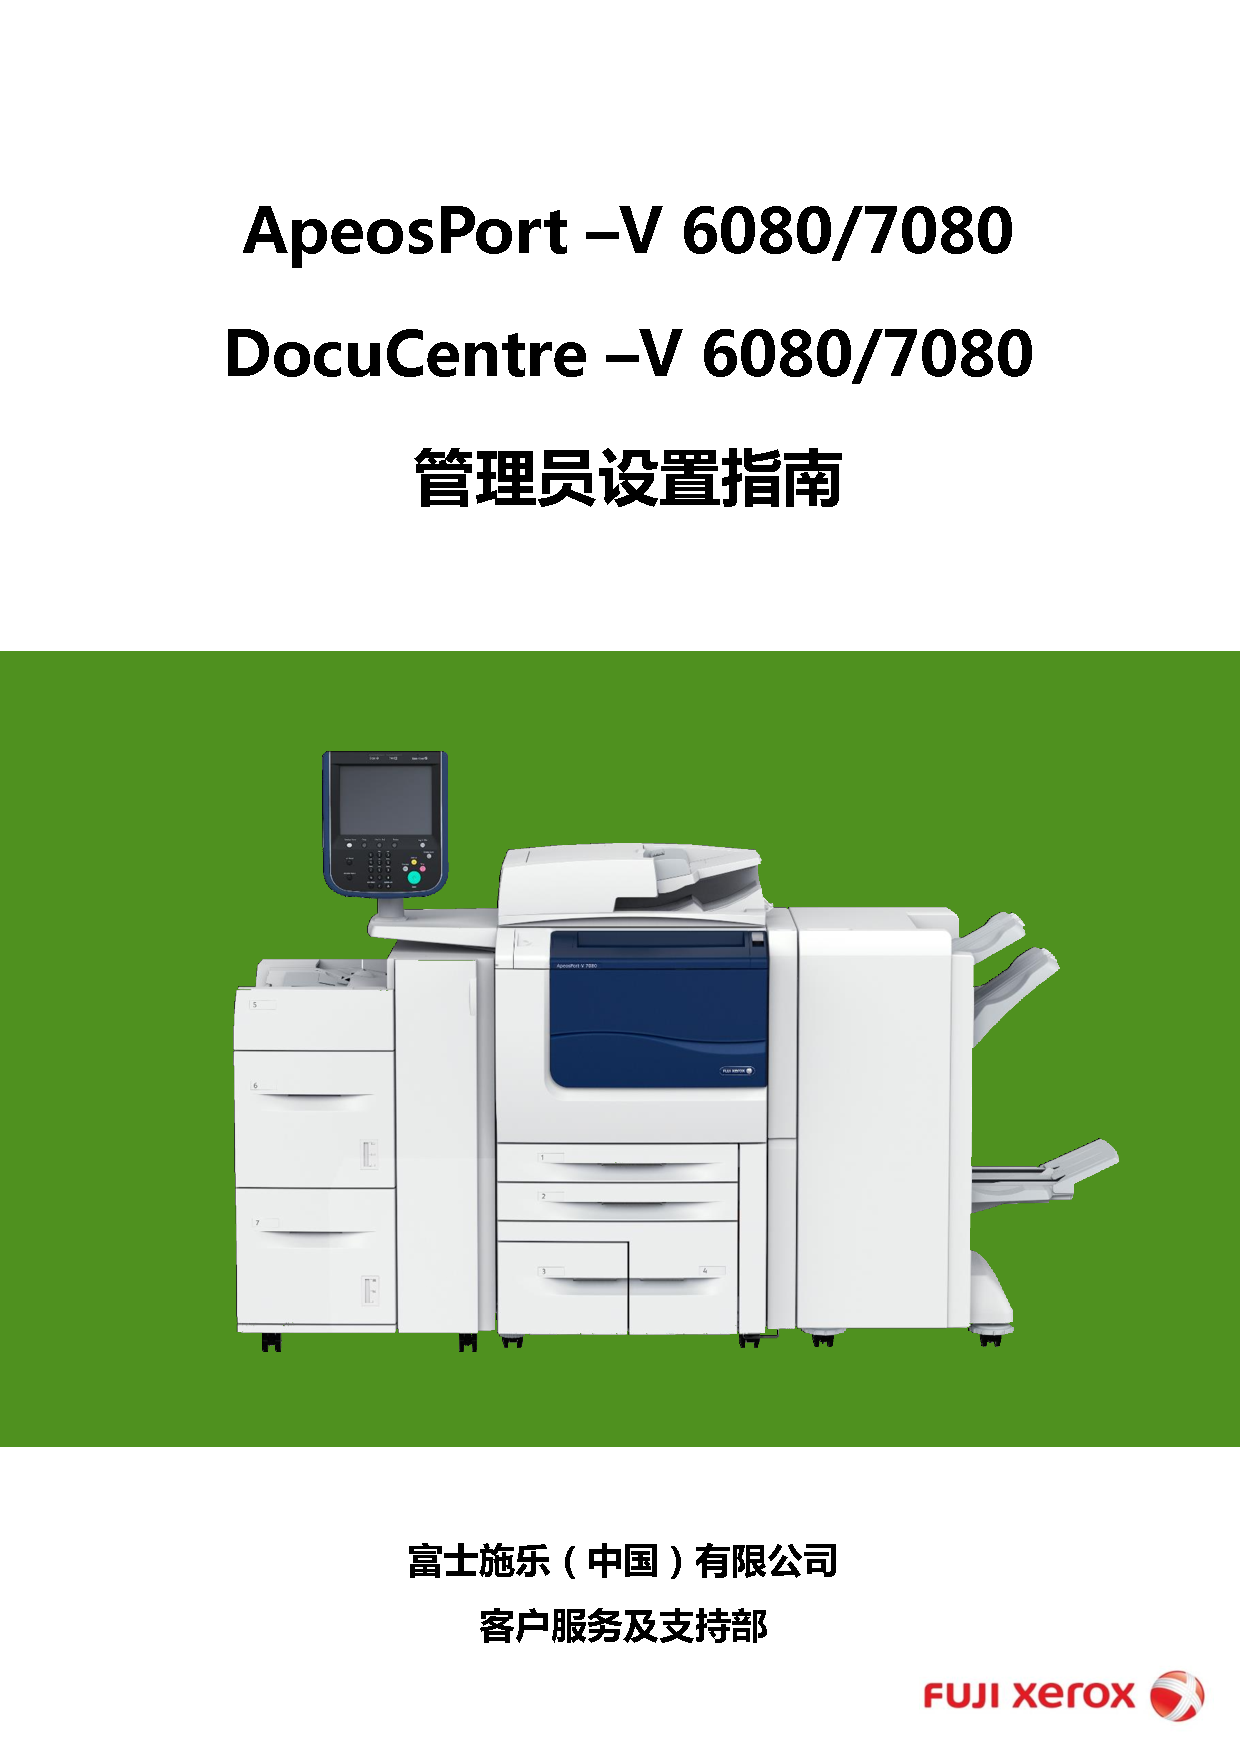 富士施乐 Fuji Xerox ApeosPort-V 6080, DocuCentre-V 6080 管理员设置指南 封面